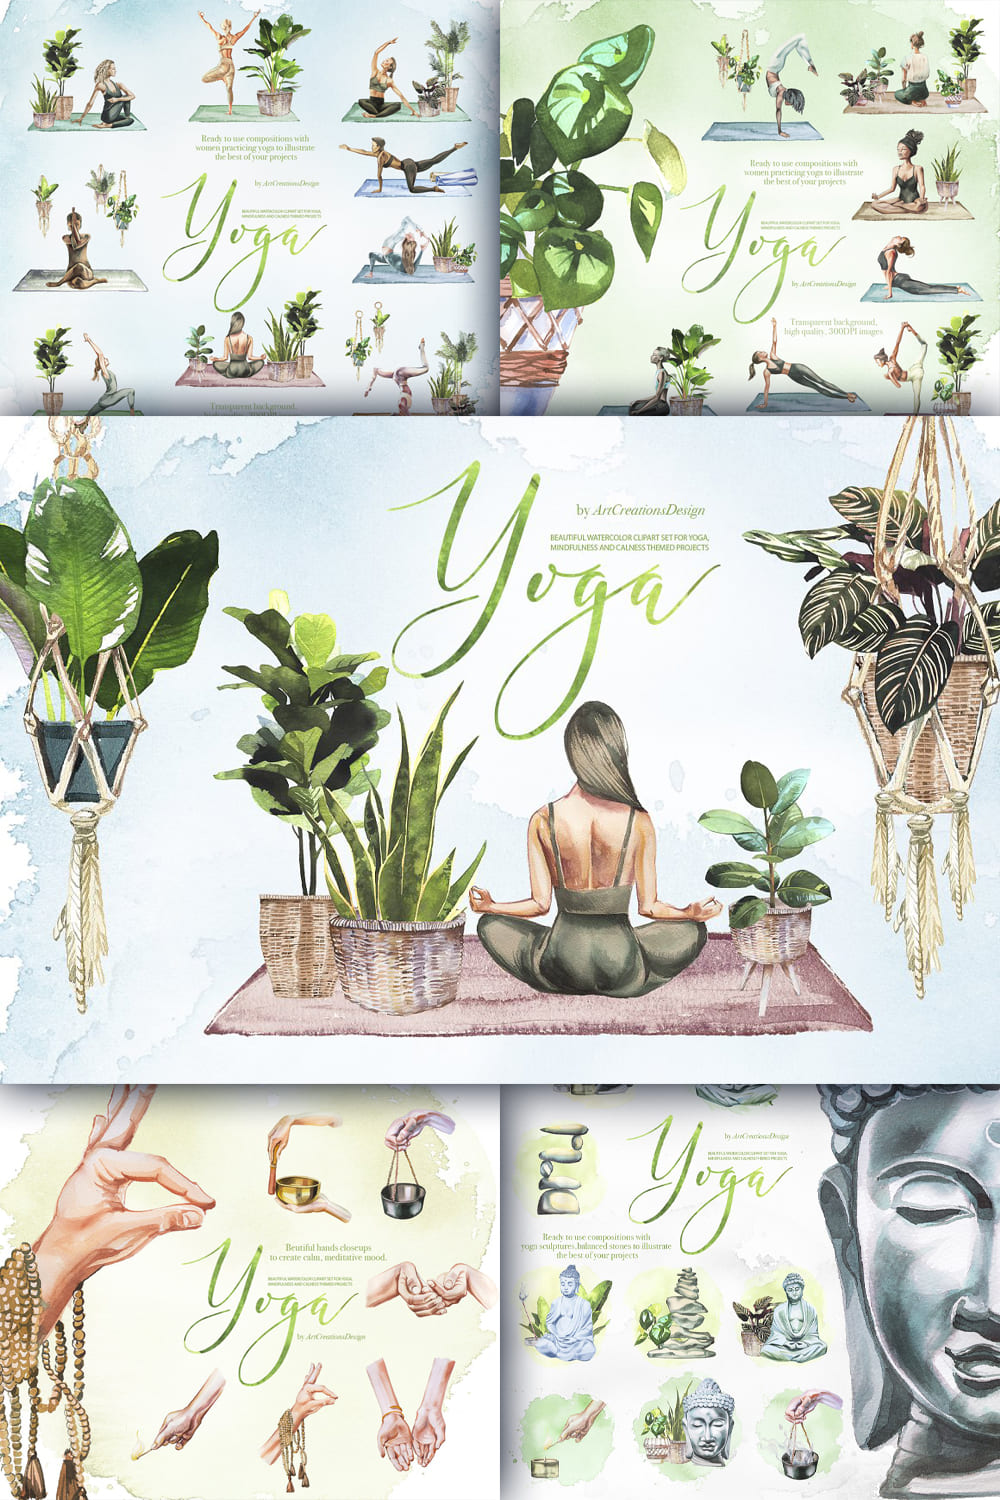 Watercolor yoga clipart set - pinterest image preview.